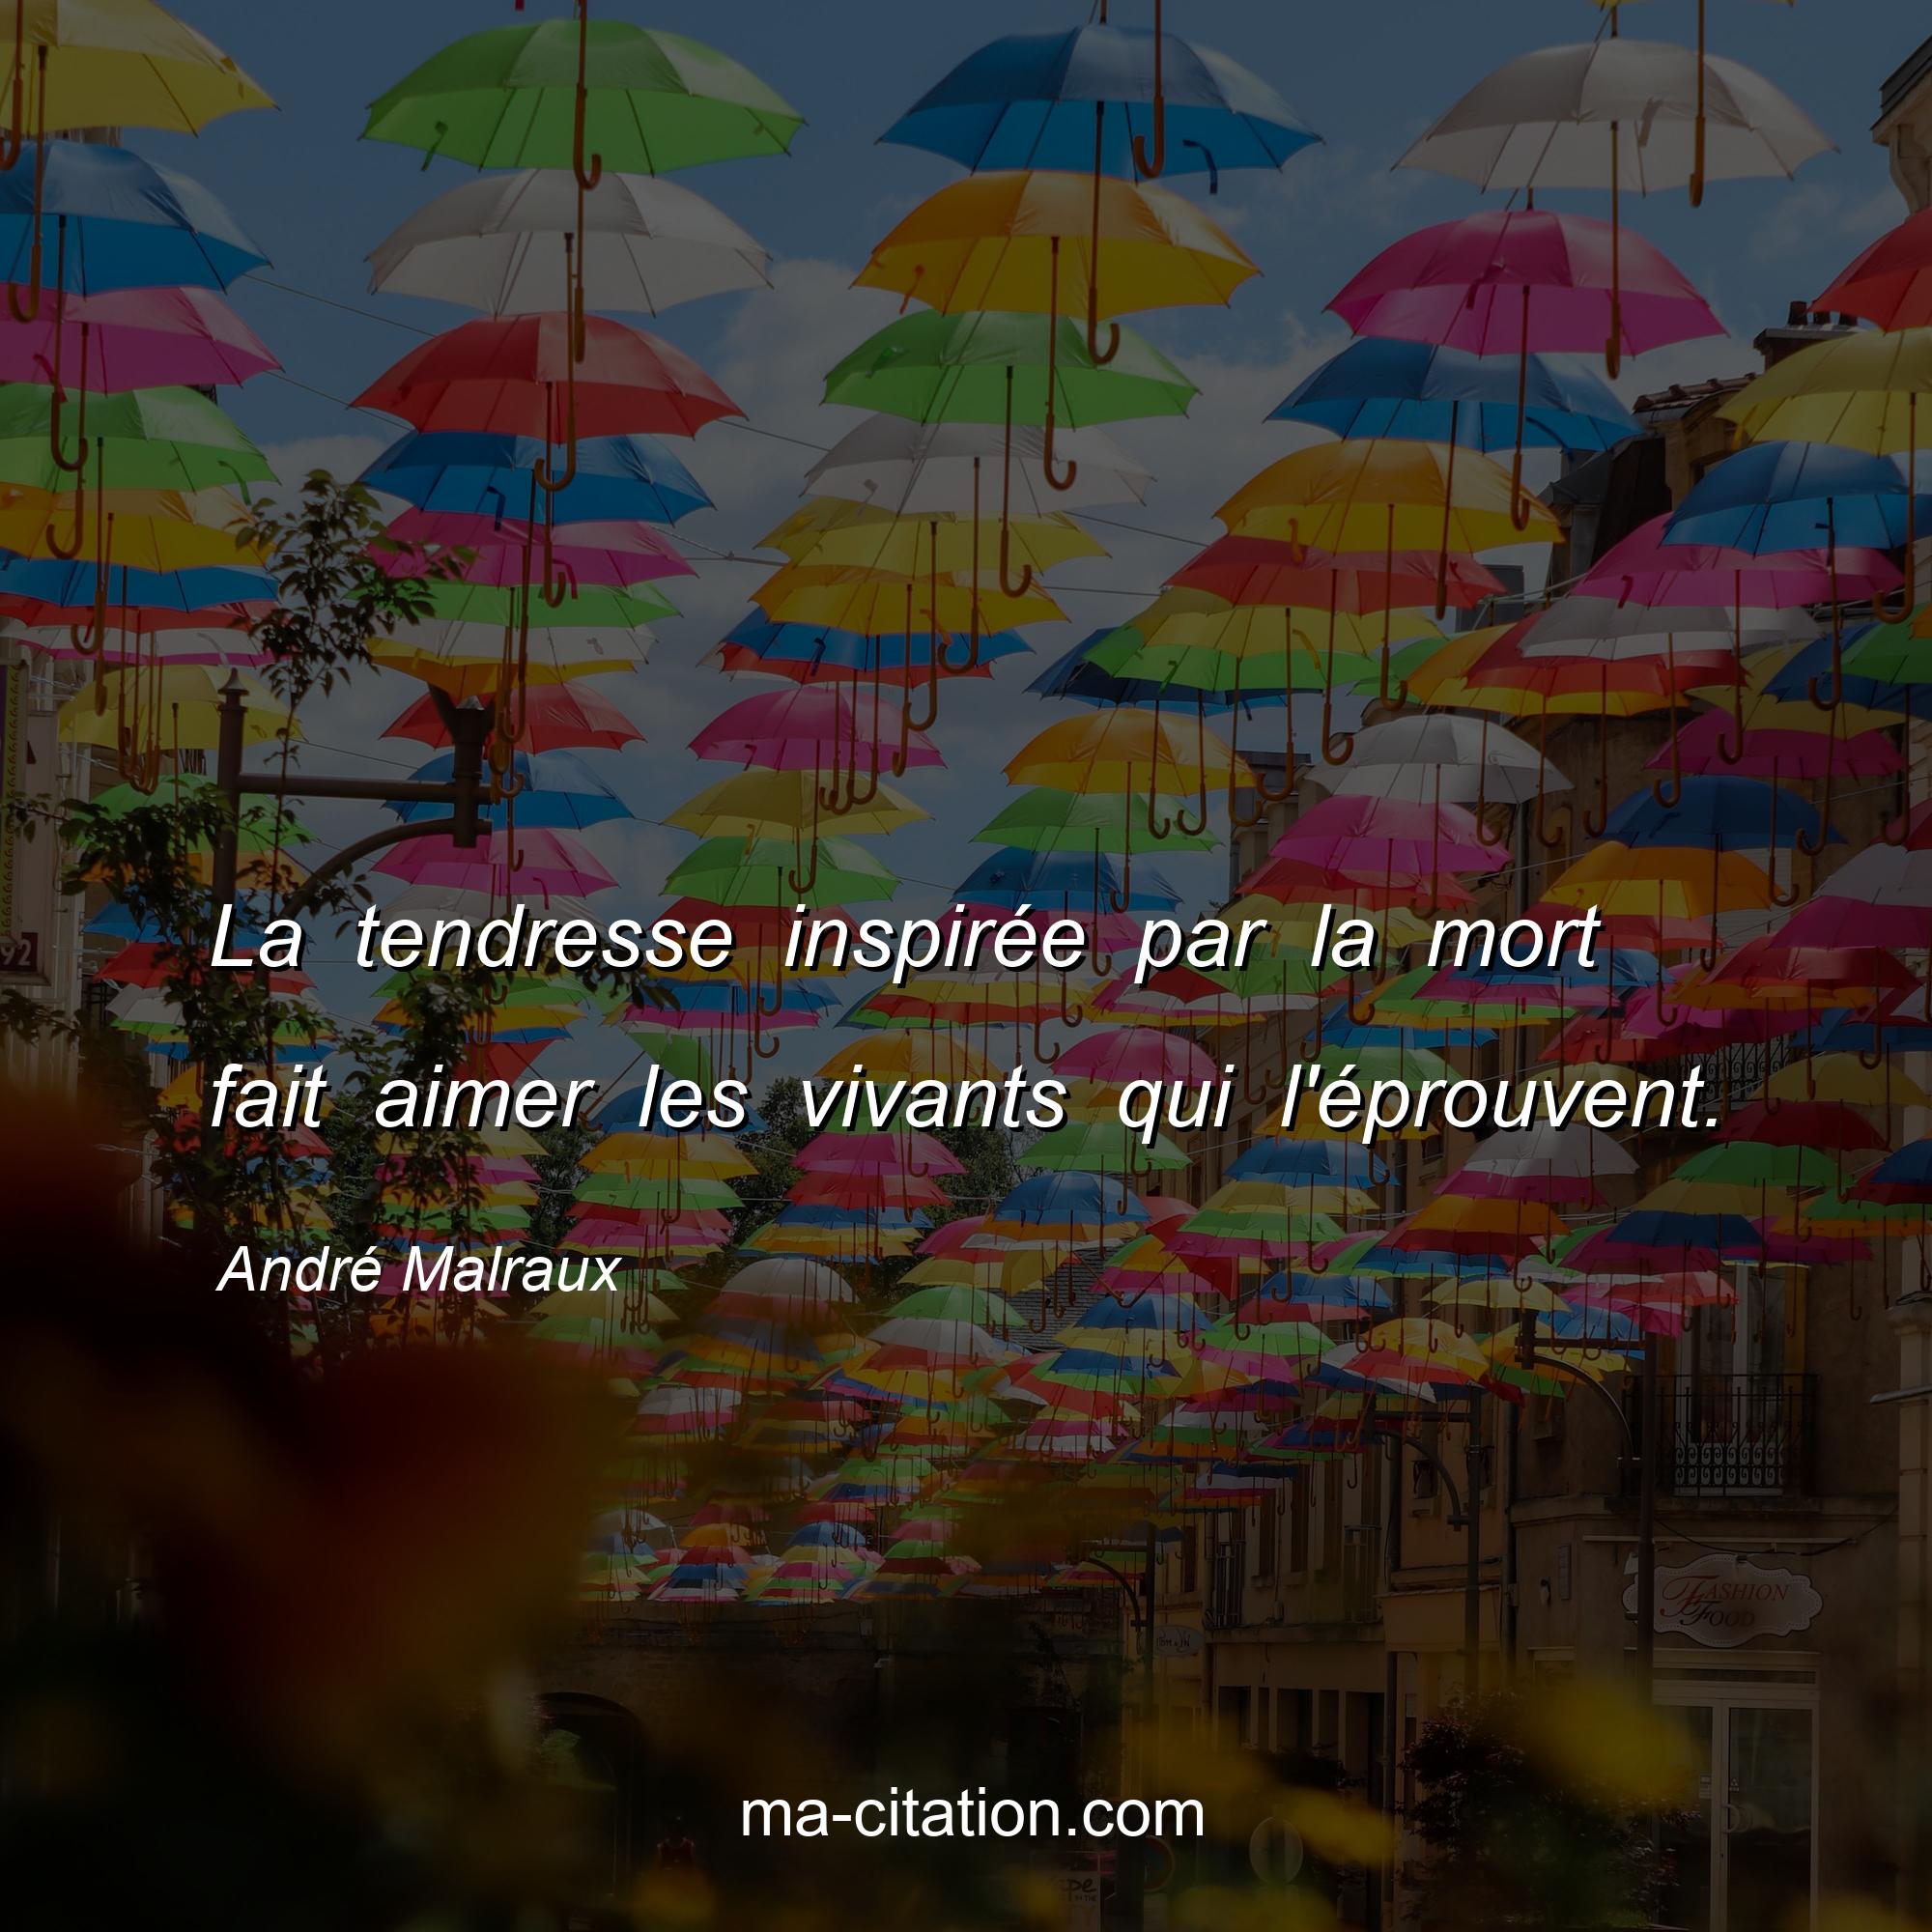 André Malraux : La tendresse inspirée par la mort fait aimer les vivants qui l'éprouvent.